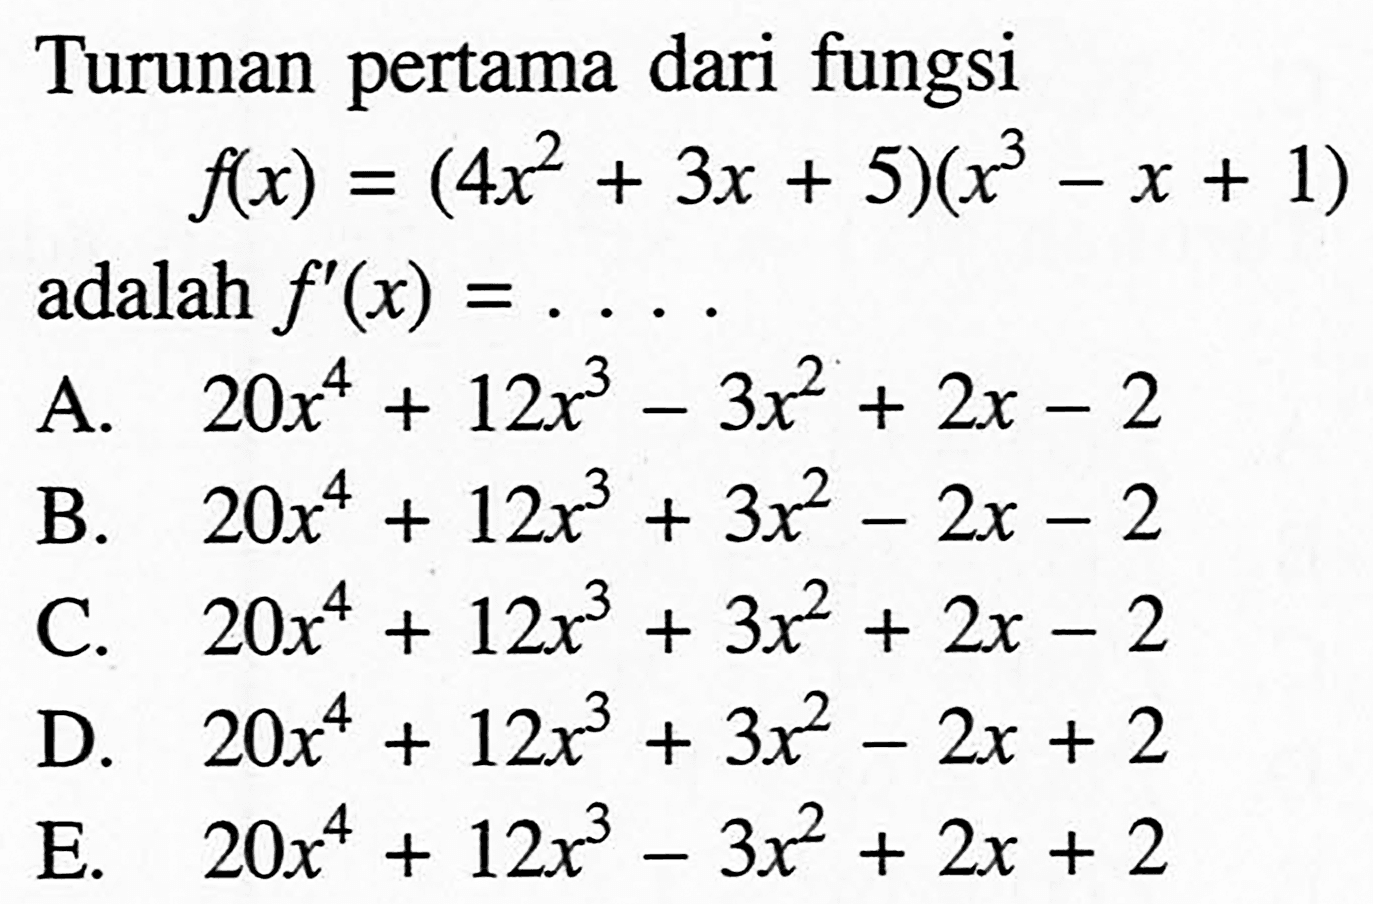 Turunan pertama dari fungsif(x)=(4x^2+3x+5)(x^3-x+1) adalah f'(x)=.... 